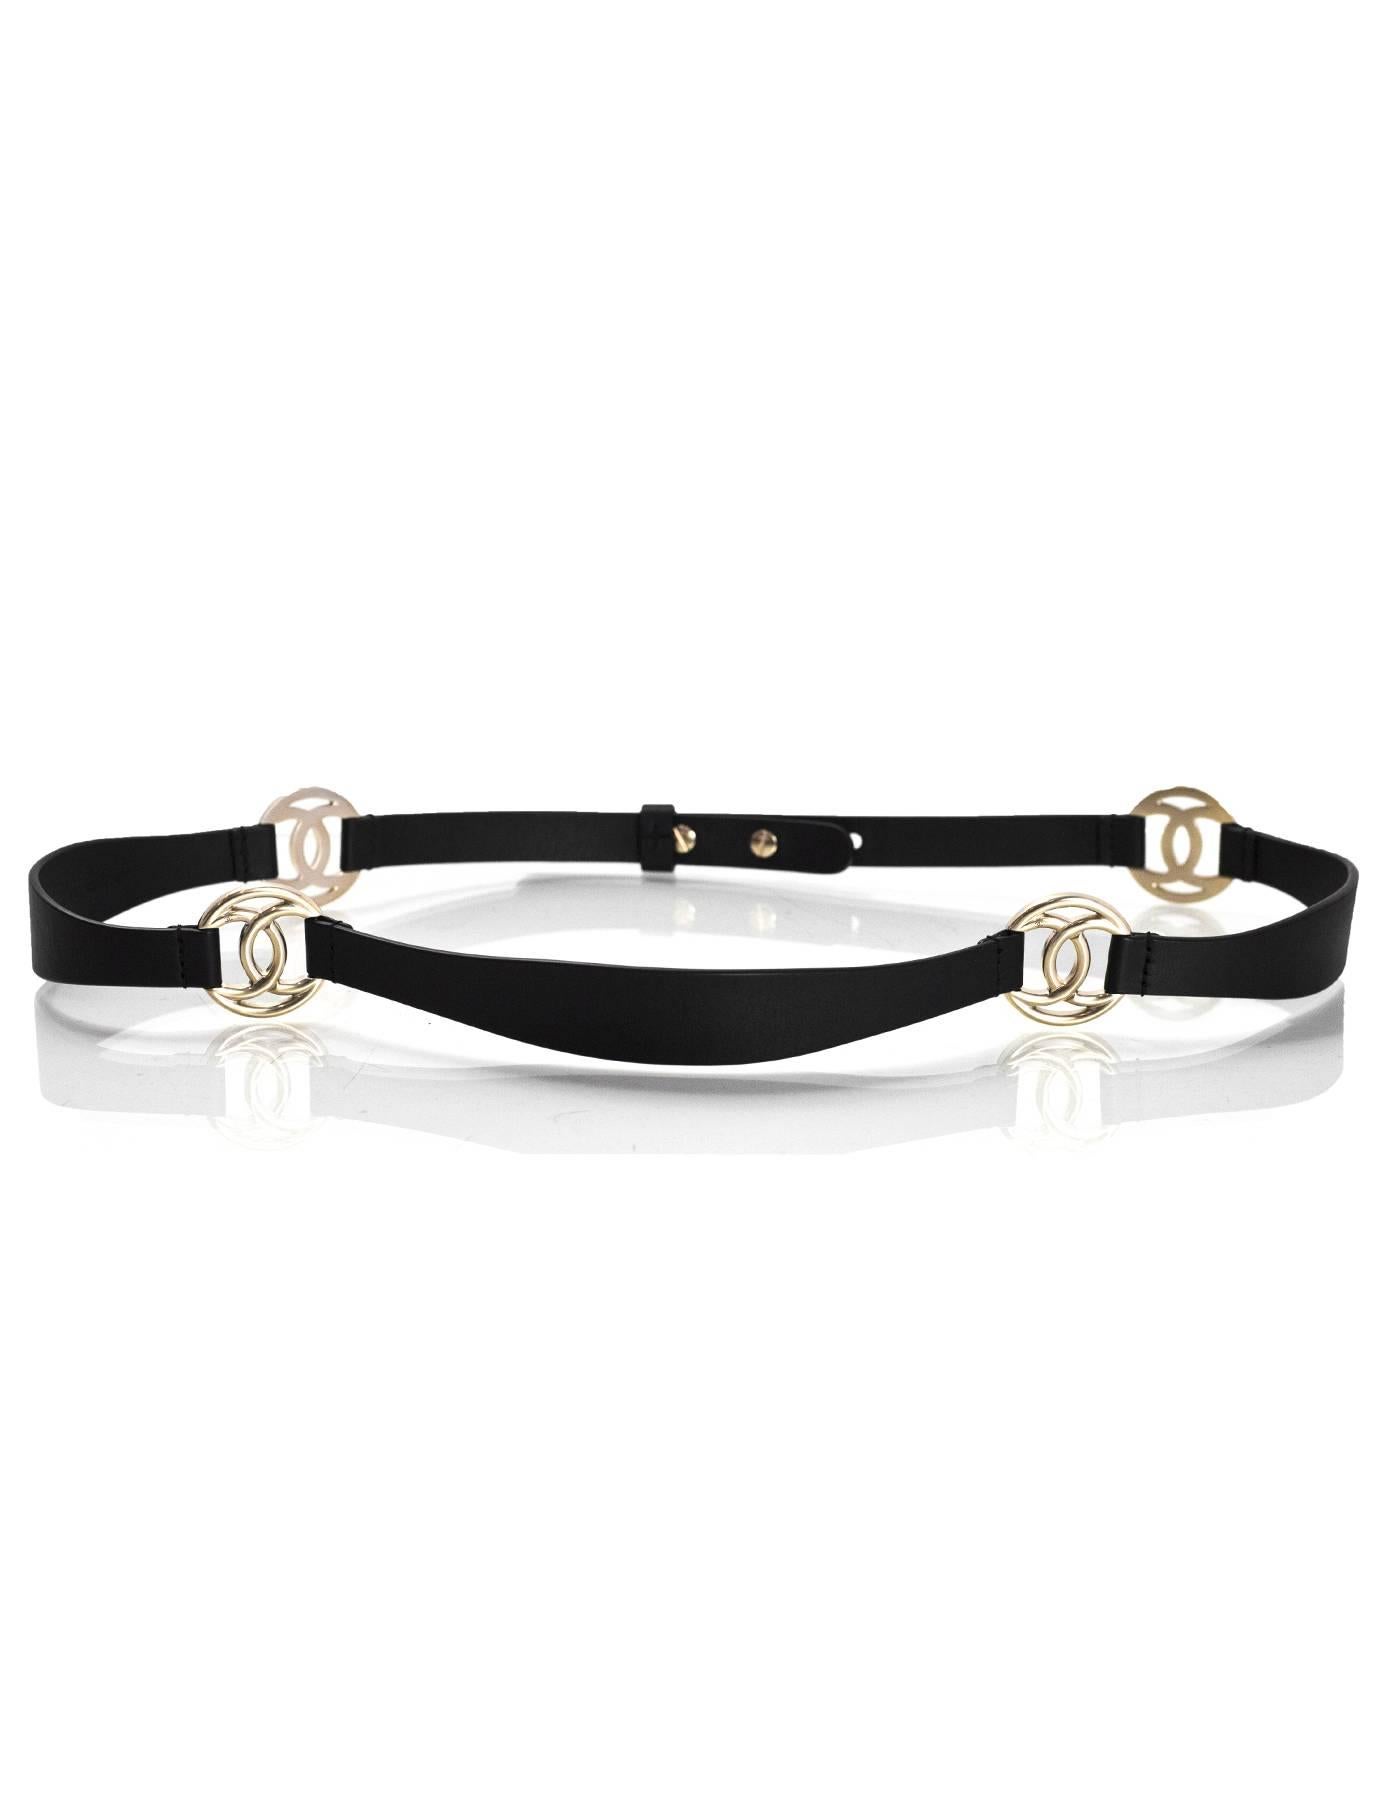 Chanel Black Leather & Pale Goldtone CC Belt Sz 85 3